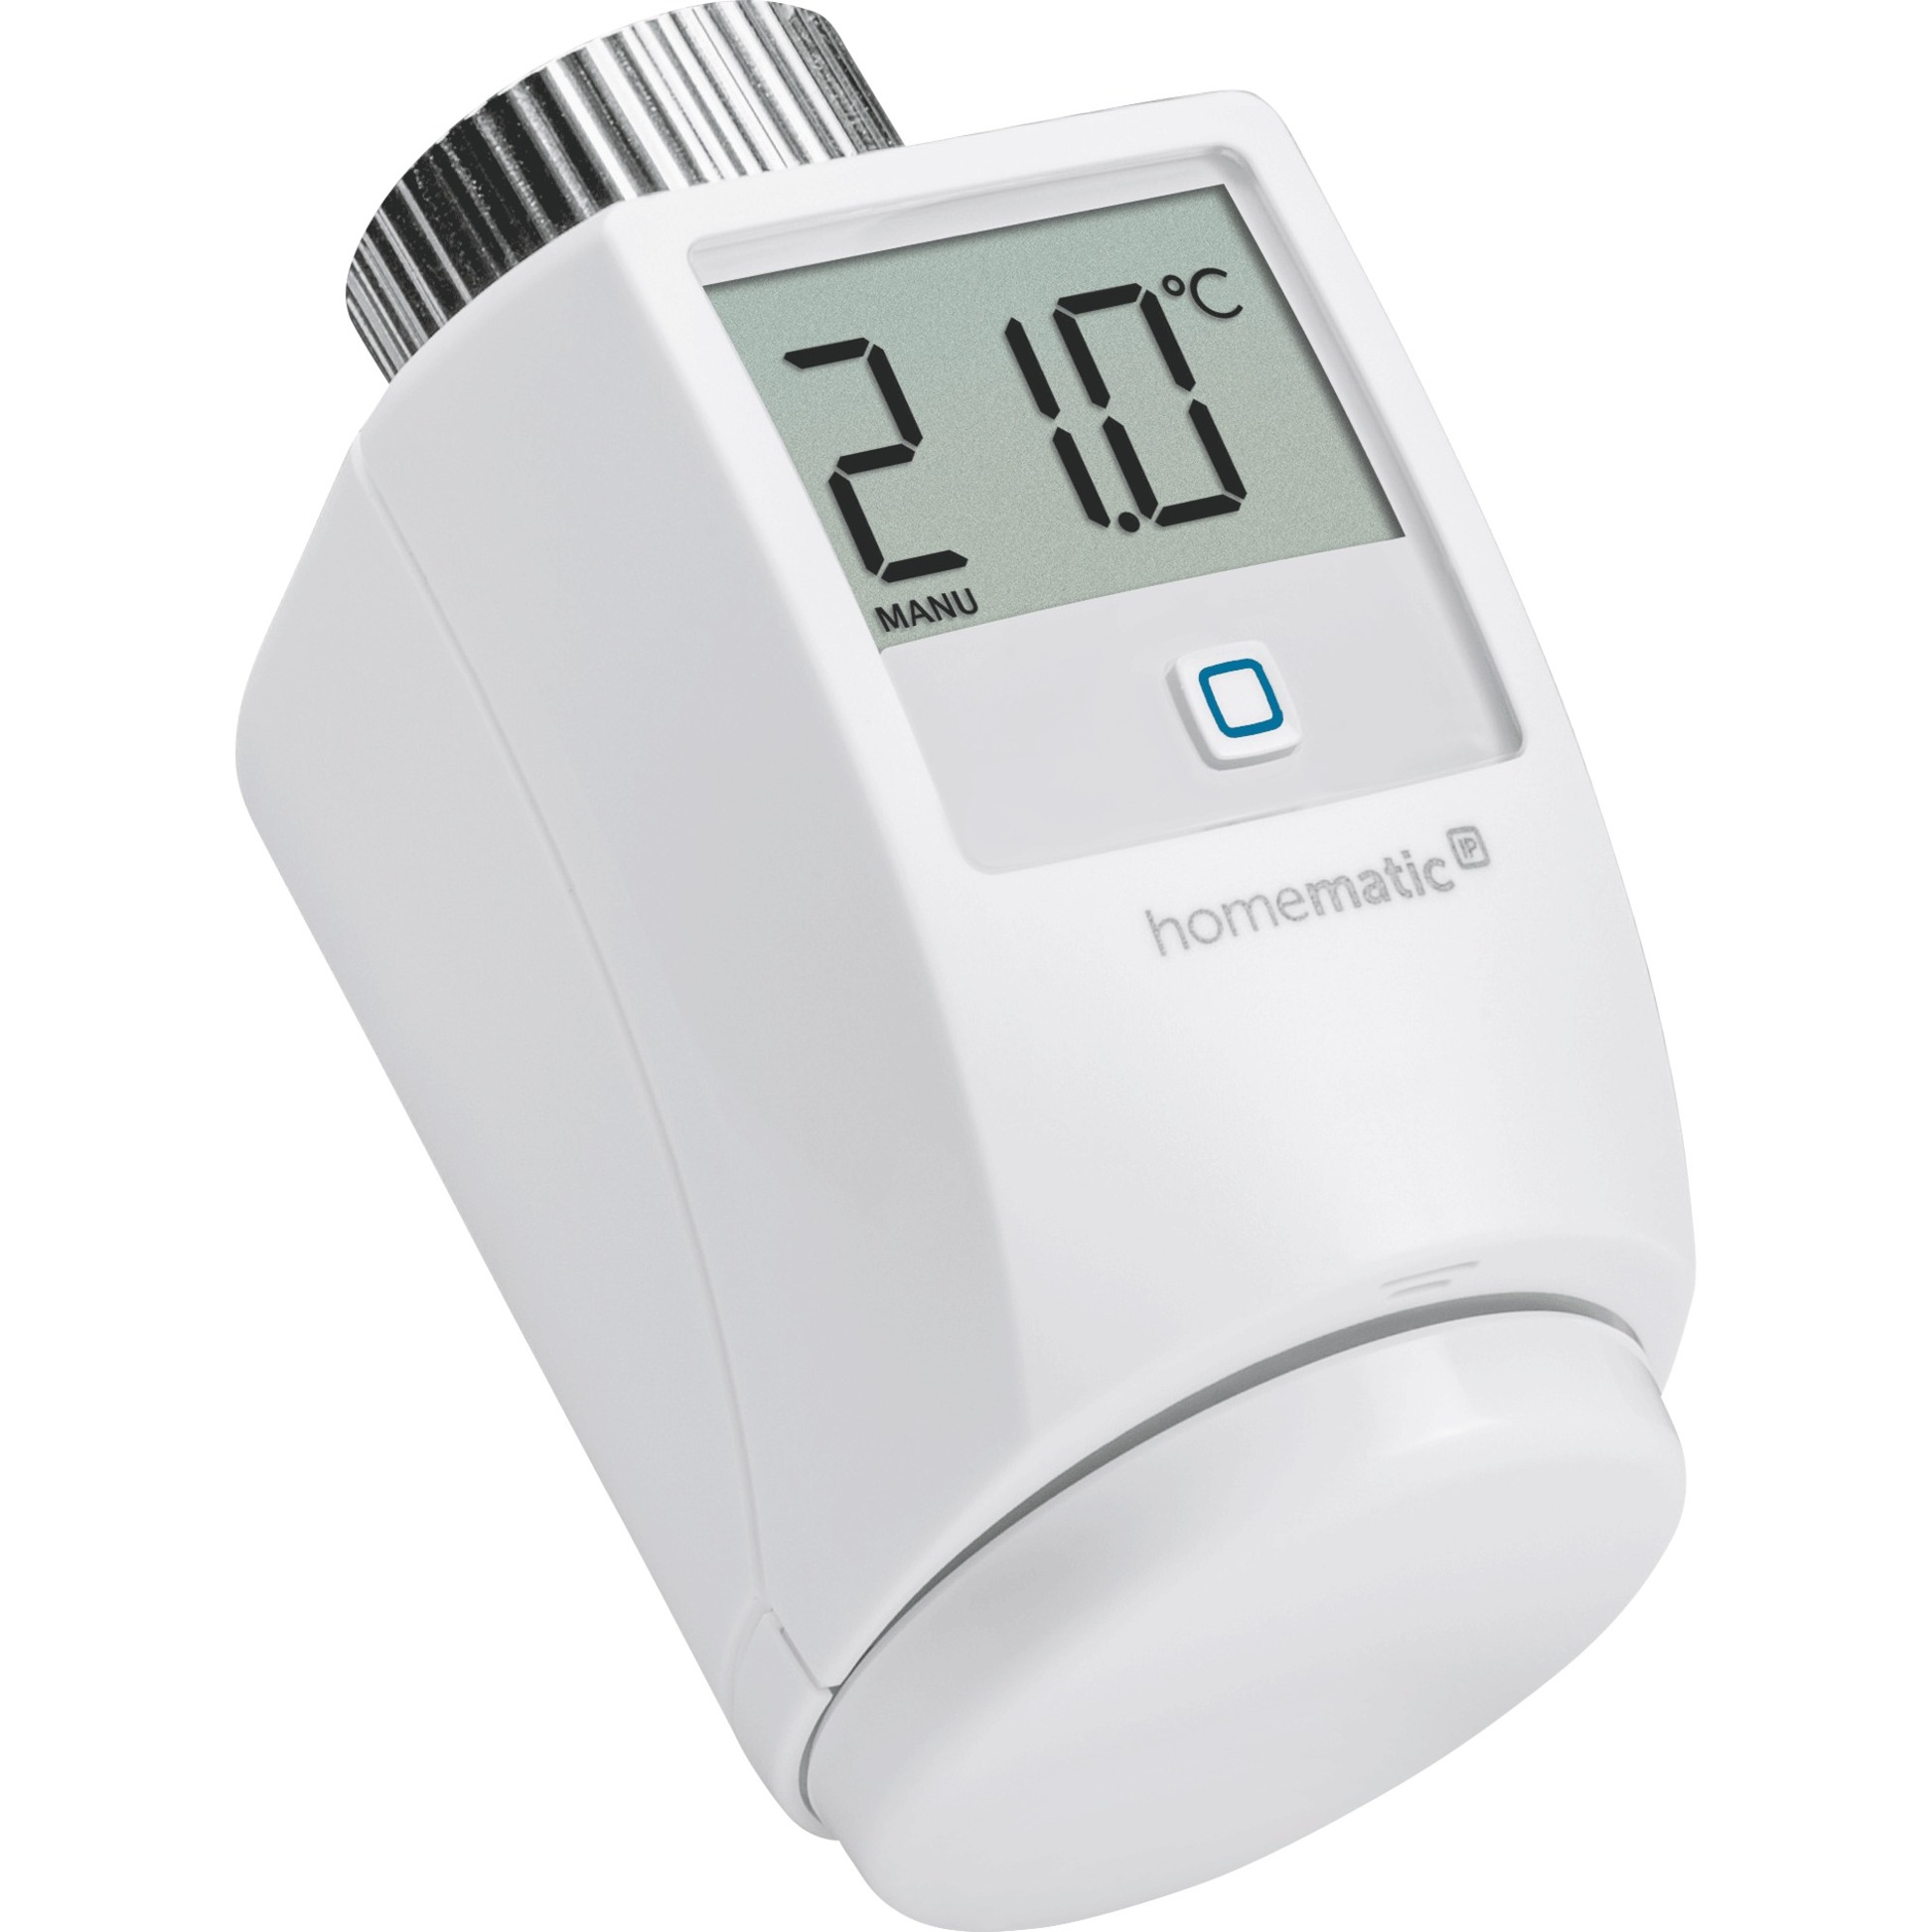 Image of Alternate - Smart Home Heizkörperthermostat (HmIP-eTRV-2), Heizungsthermostat online einkaufen bei Alternate